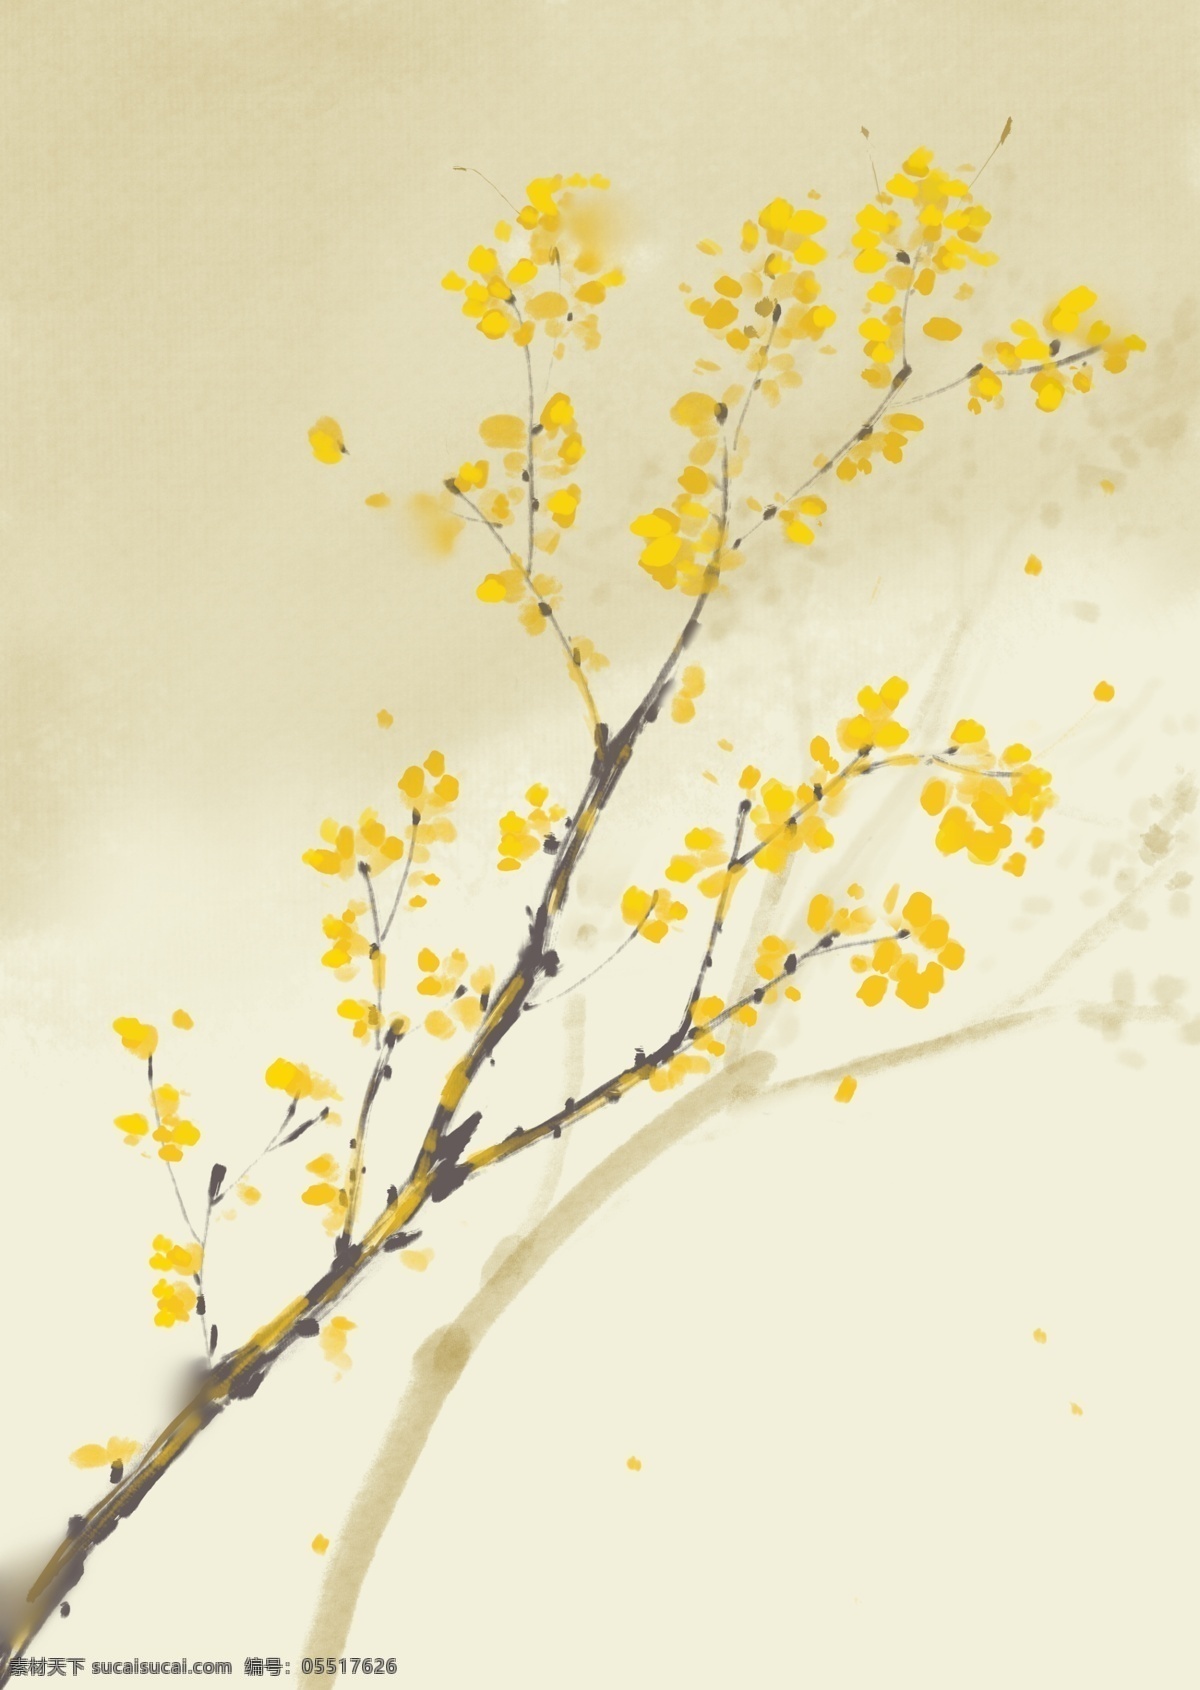 春节 腊梅 黄色 背景 植物插绘 书籍配图 书籍装饰 节日 氛围 图案 用于 海报 衣服的柄图